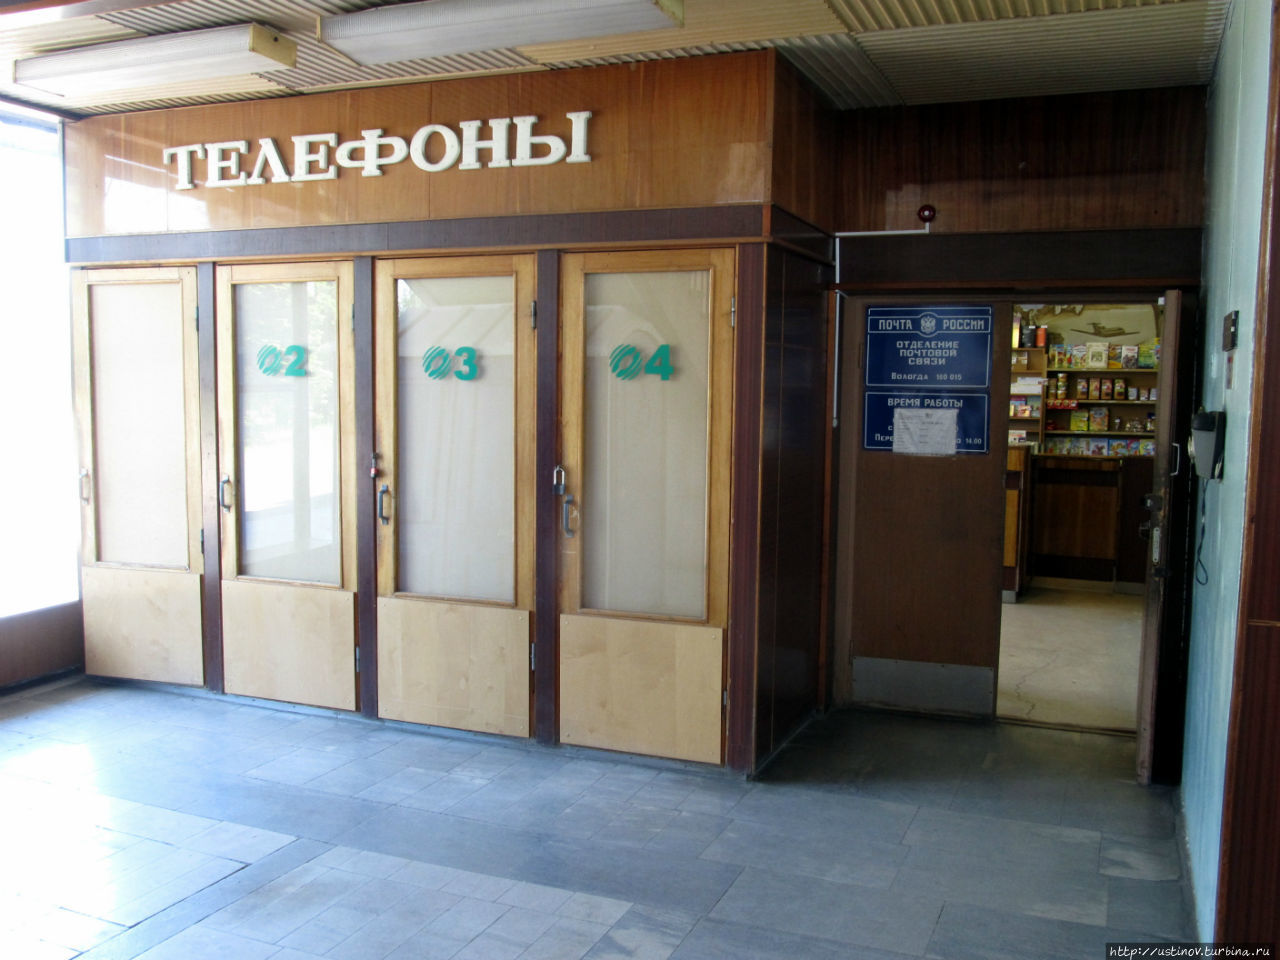 Грусть и печаль вологодского аэропорта Вологда, Россия